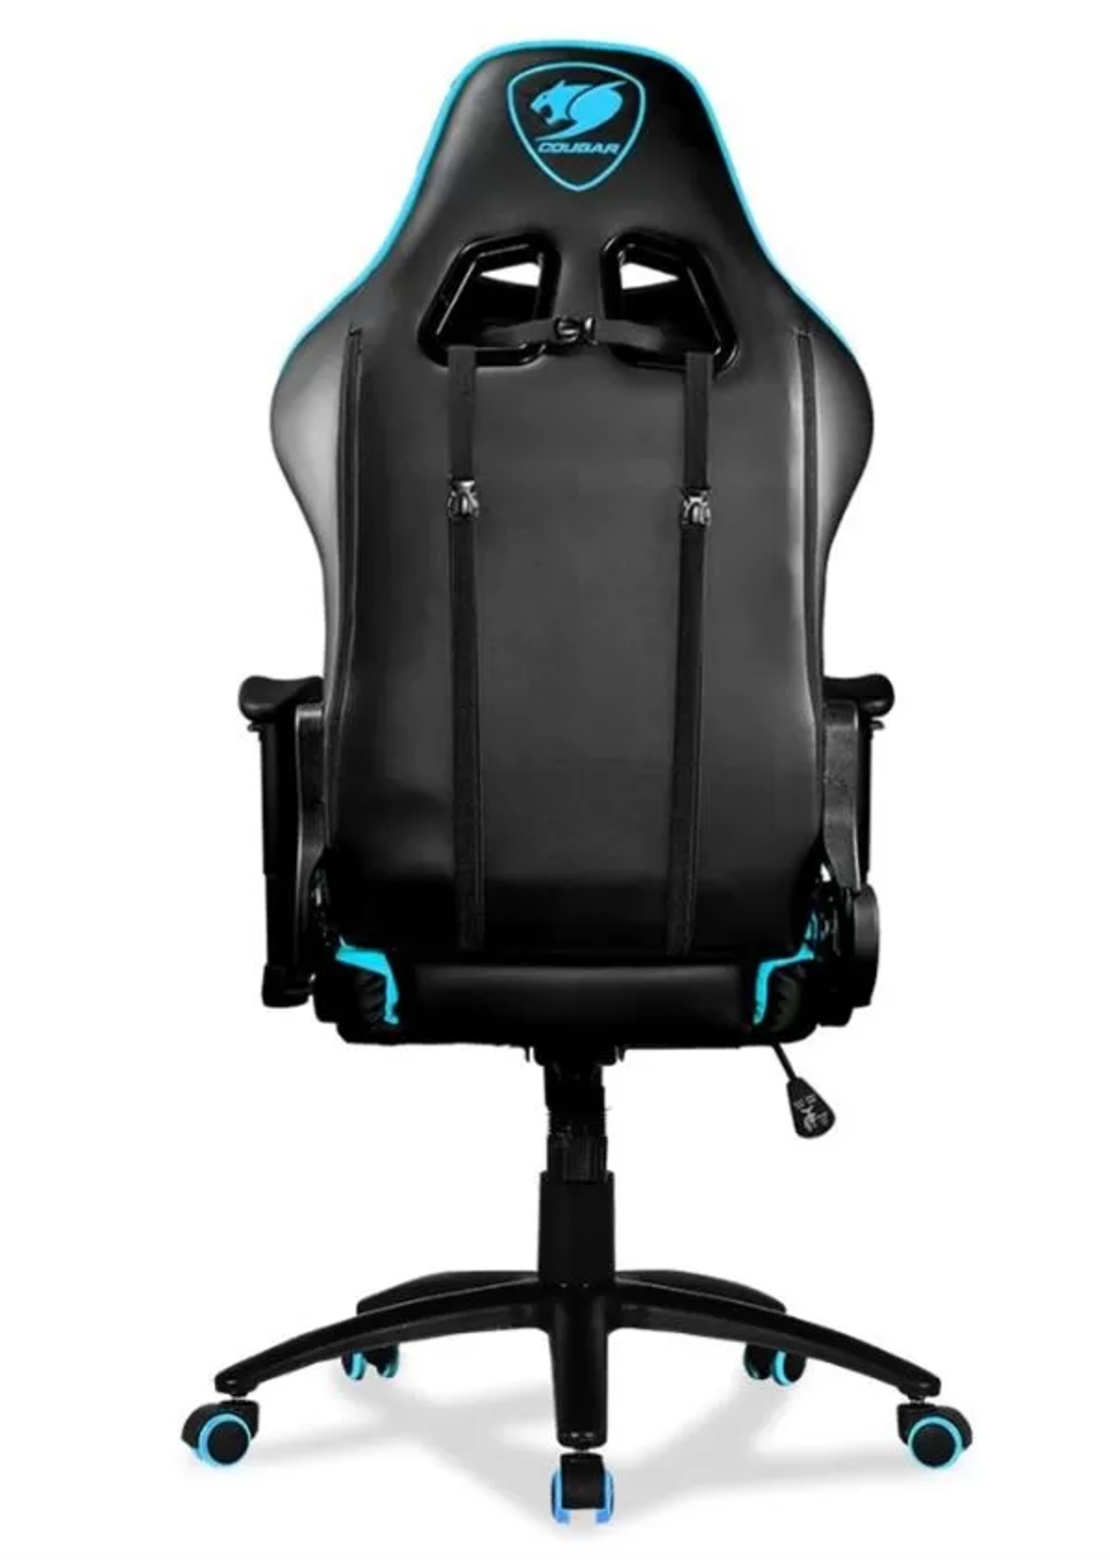 כסא גיימינג COUGAR Armor One Sky Blue gaming chair